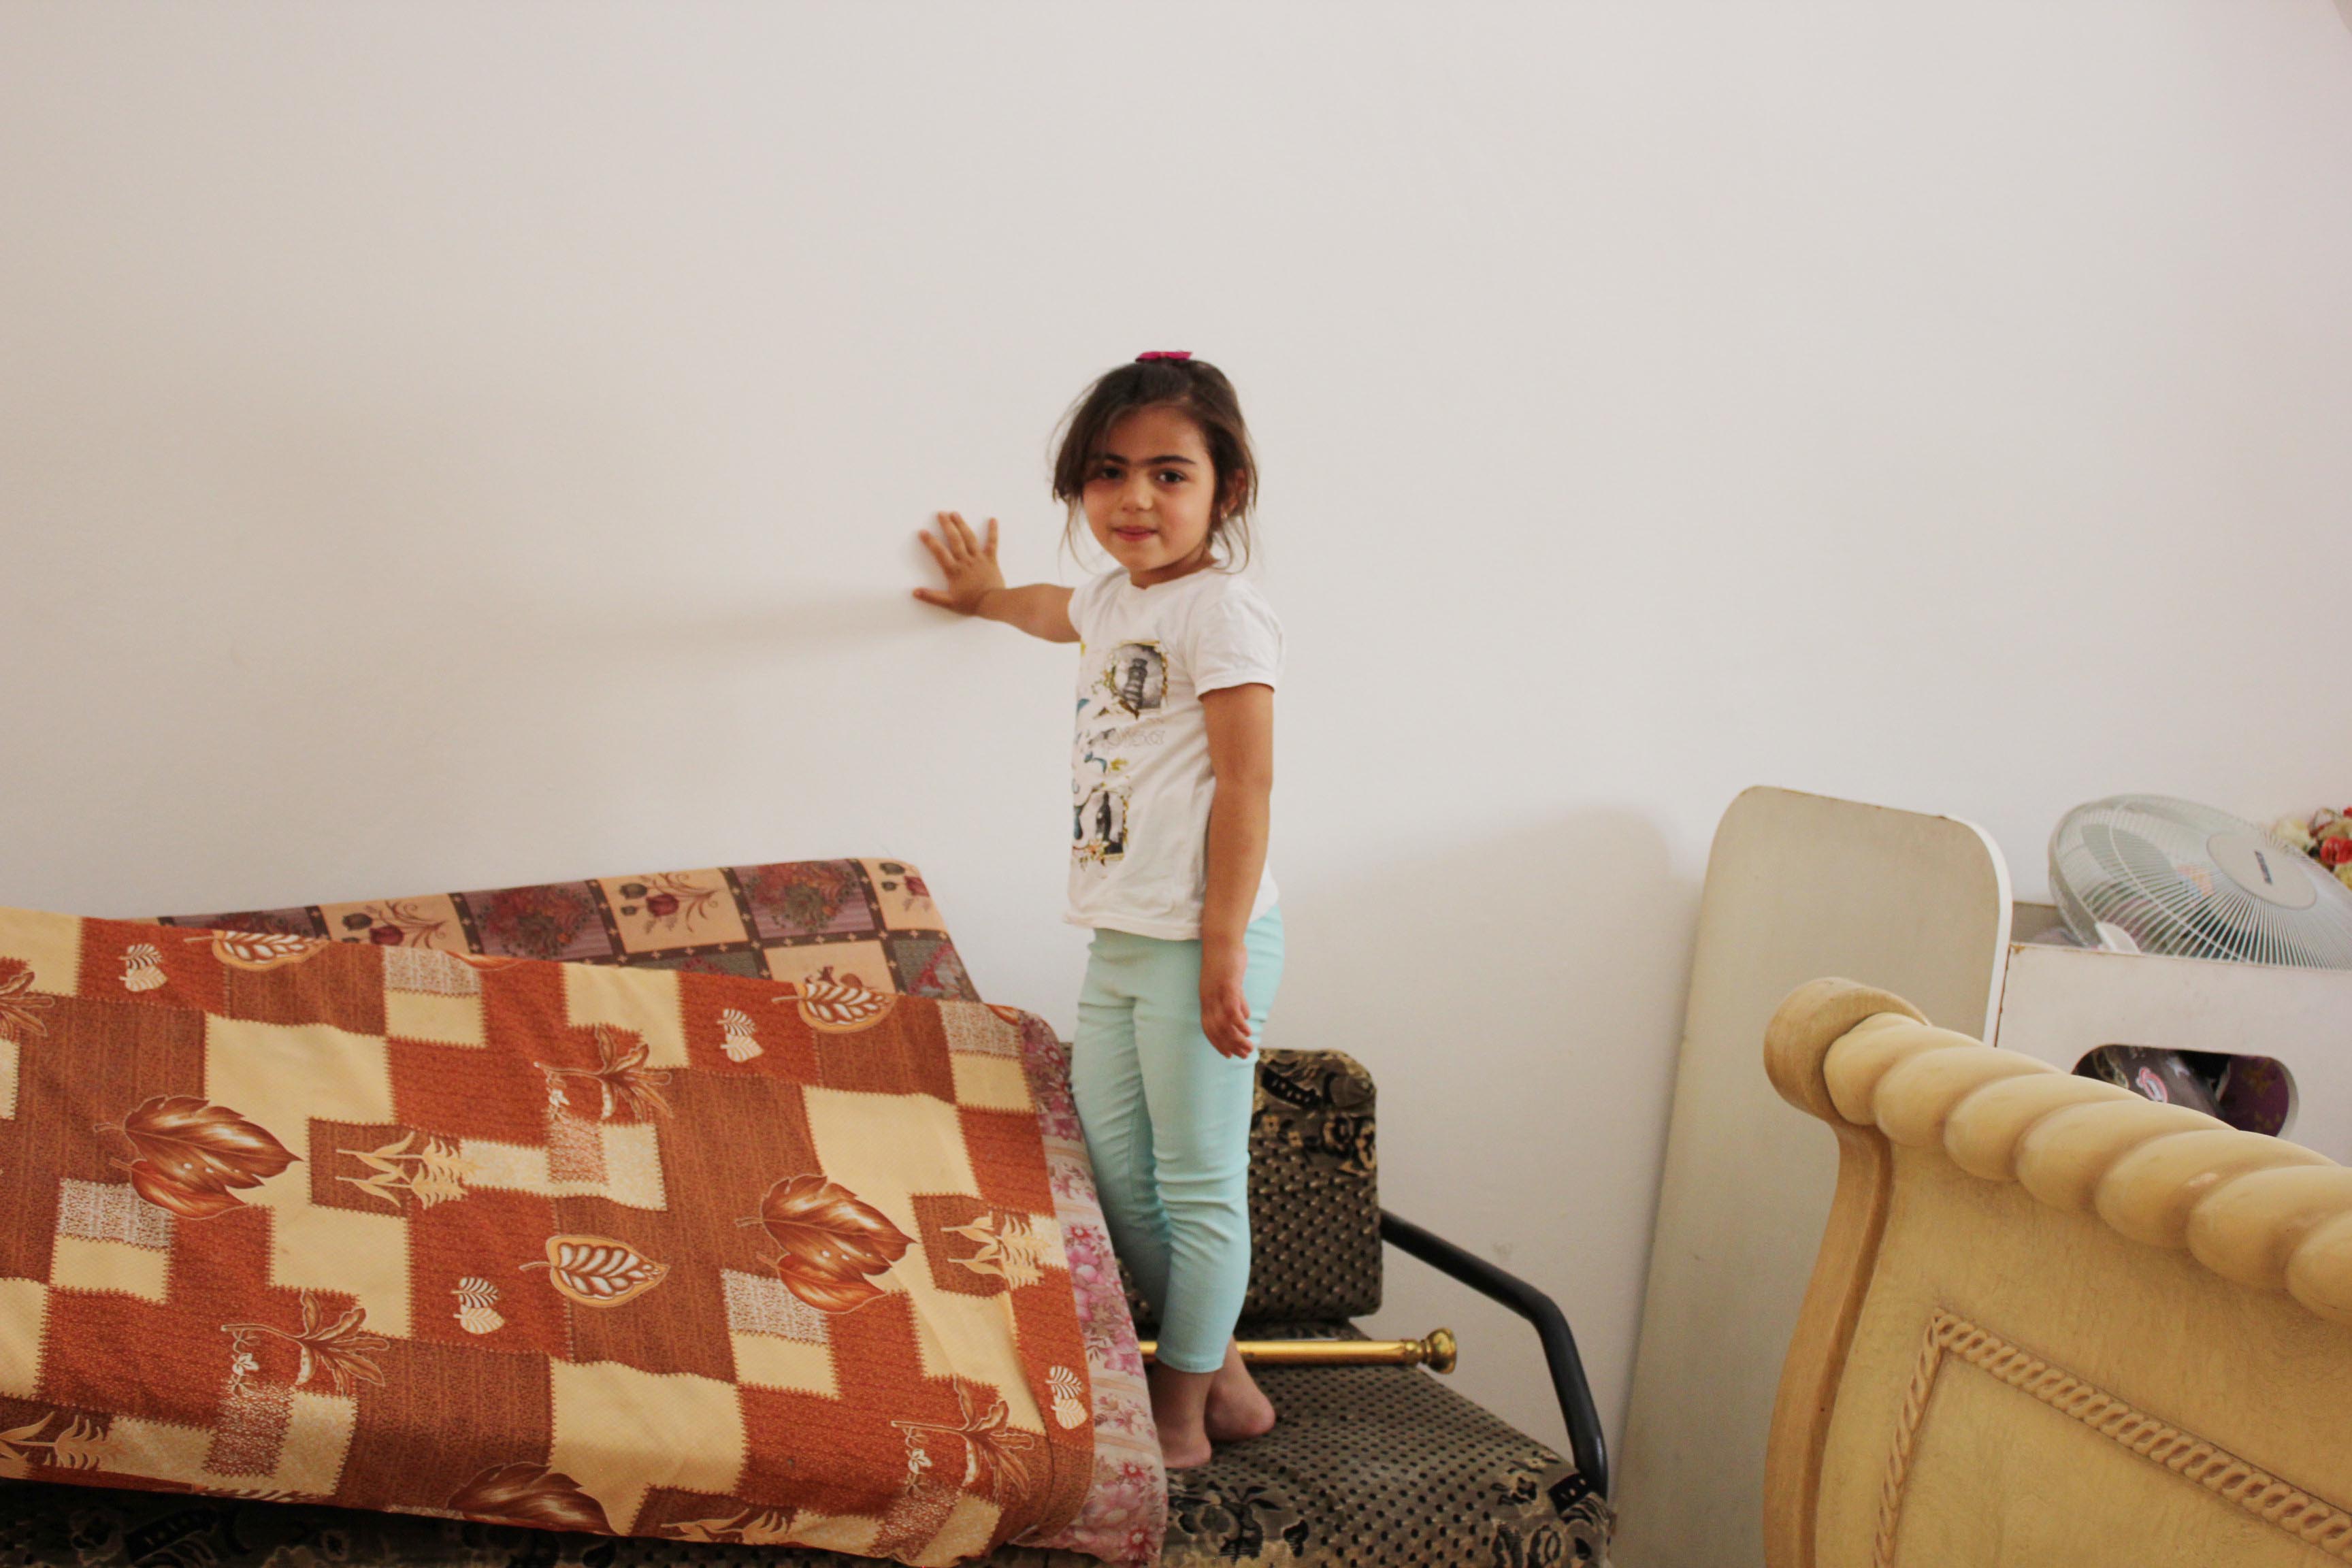 ابنة سهاد، ملوك (4 أعوام)، تقف في غرفة نومها بعد ترميمها.